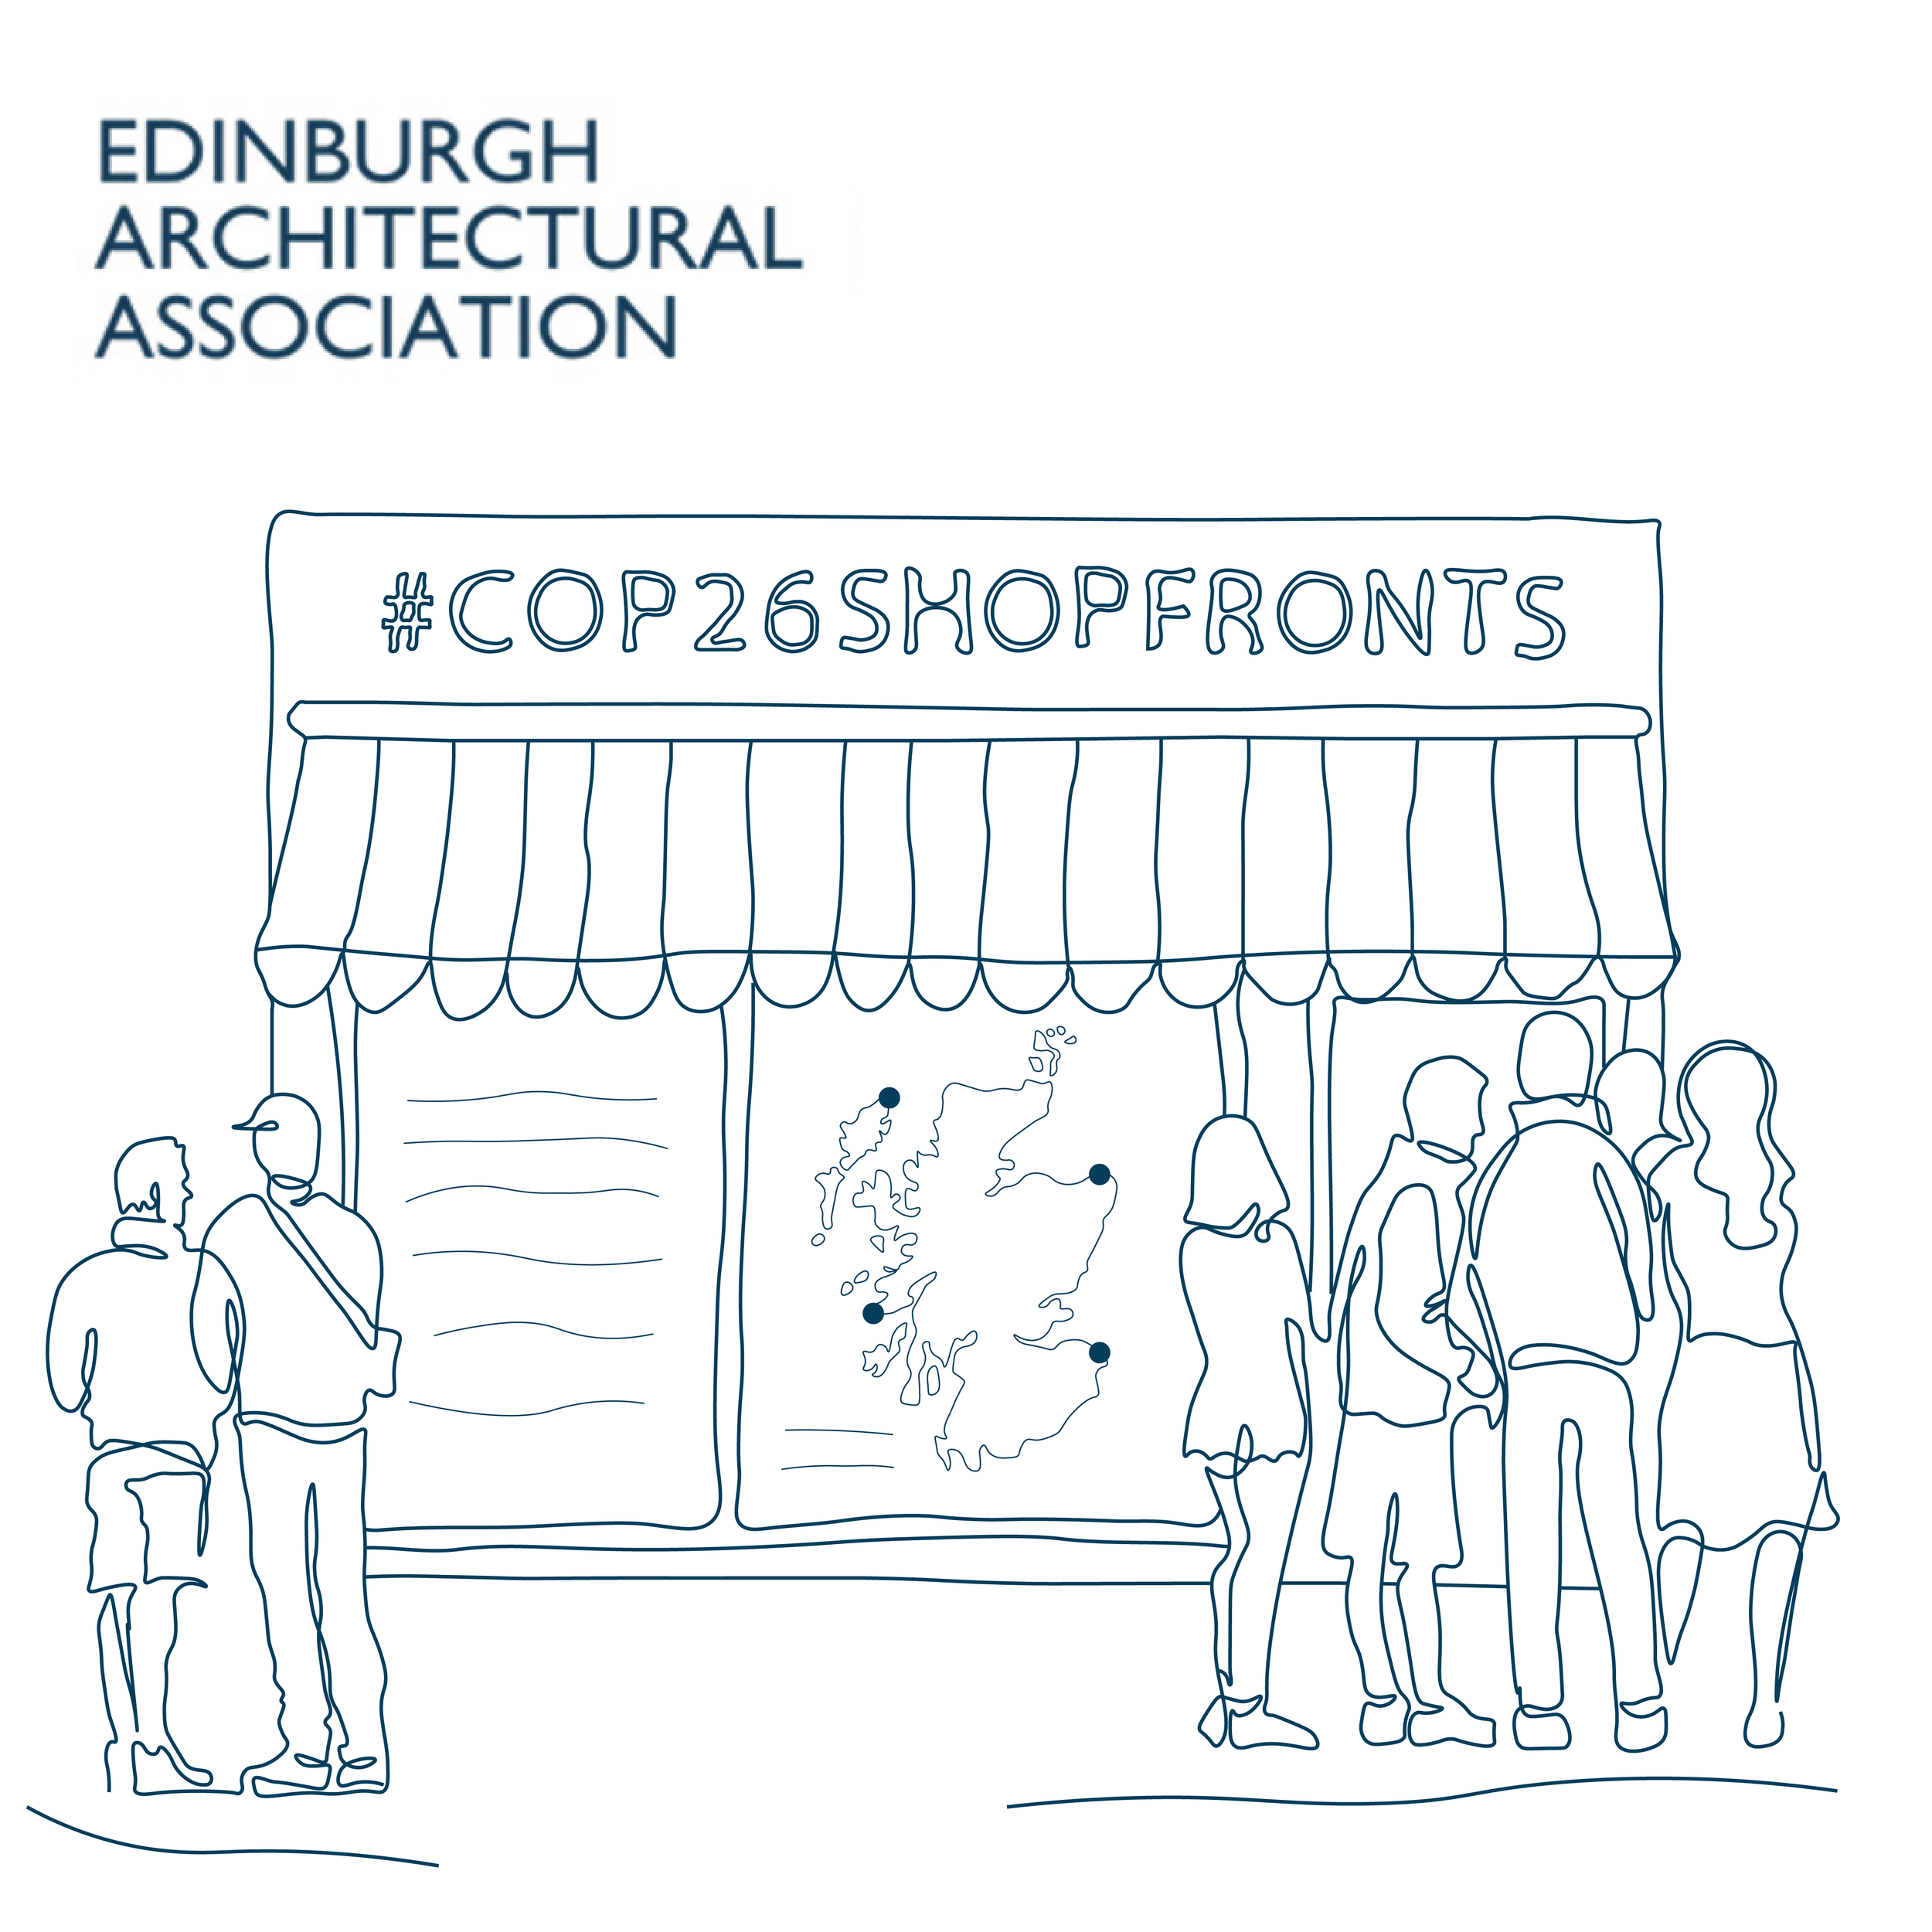 eaa-edinburgh-architectural-association-scotland-uk-cop26-shop-fronts-launch-invite-image-1.png